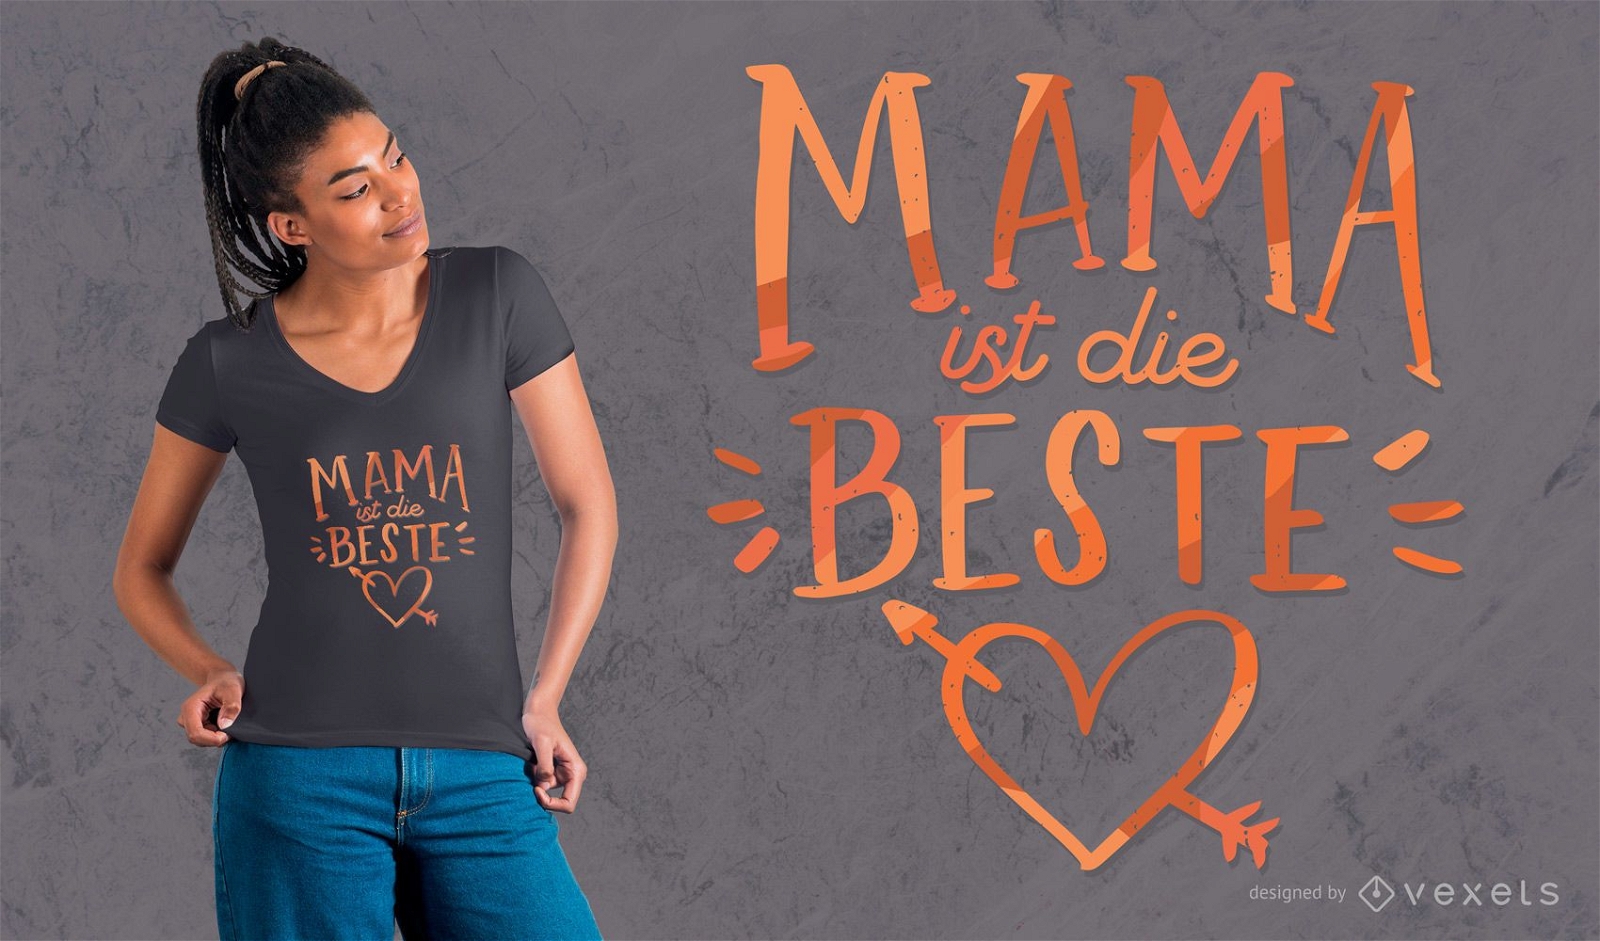 Dise?o de camiseta de mam? alemana